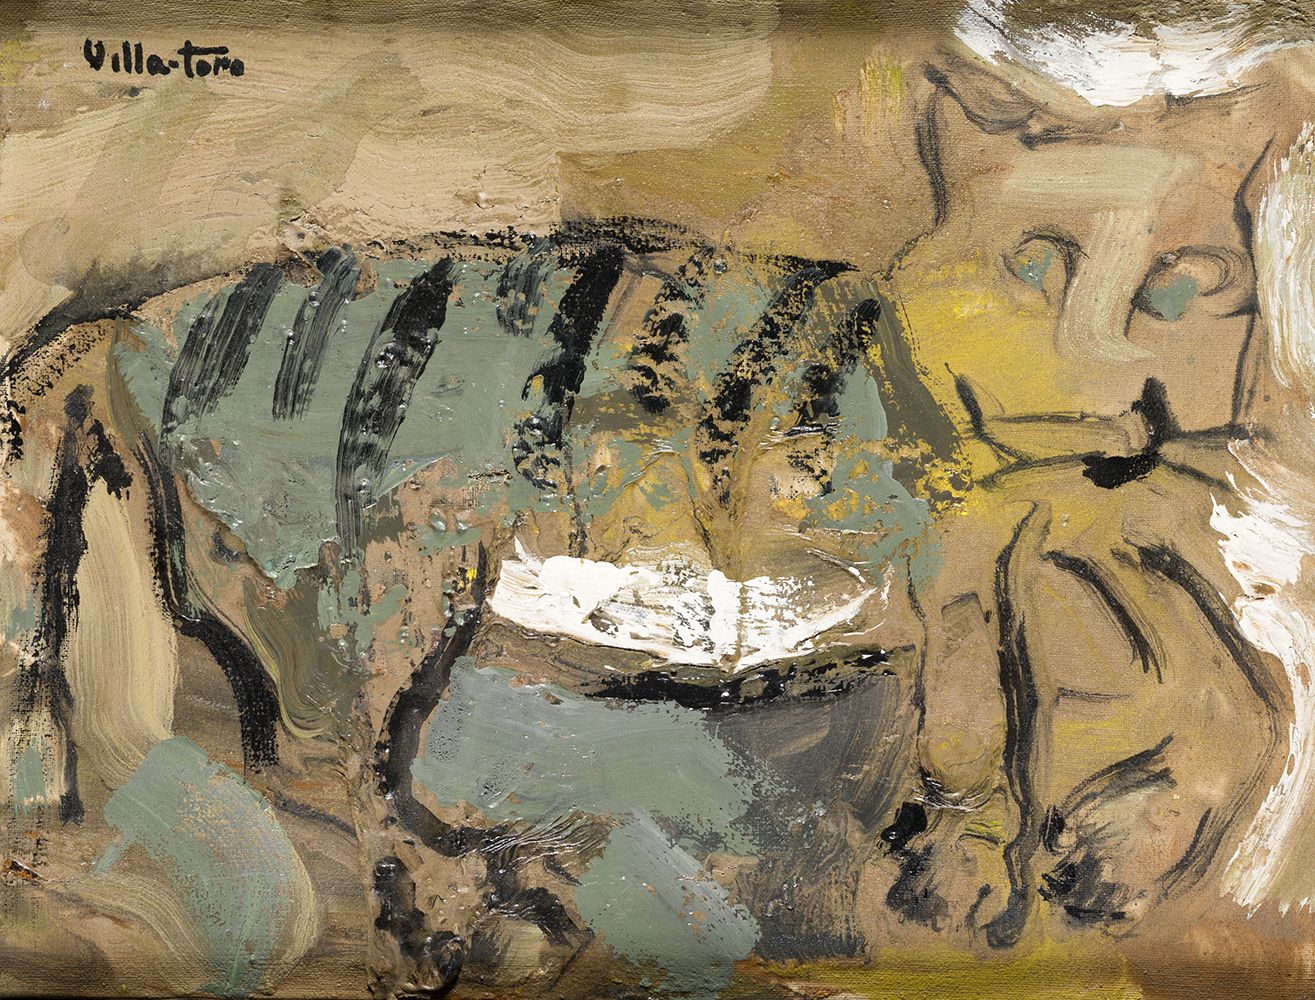 ANTONIO VILLA-TORO (1949 / .) "Feline" .305 x 40 cm. 布面混合媒体